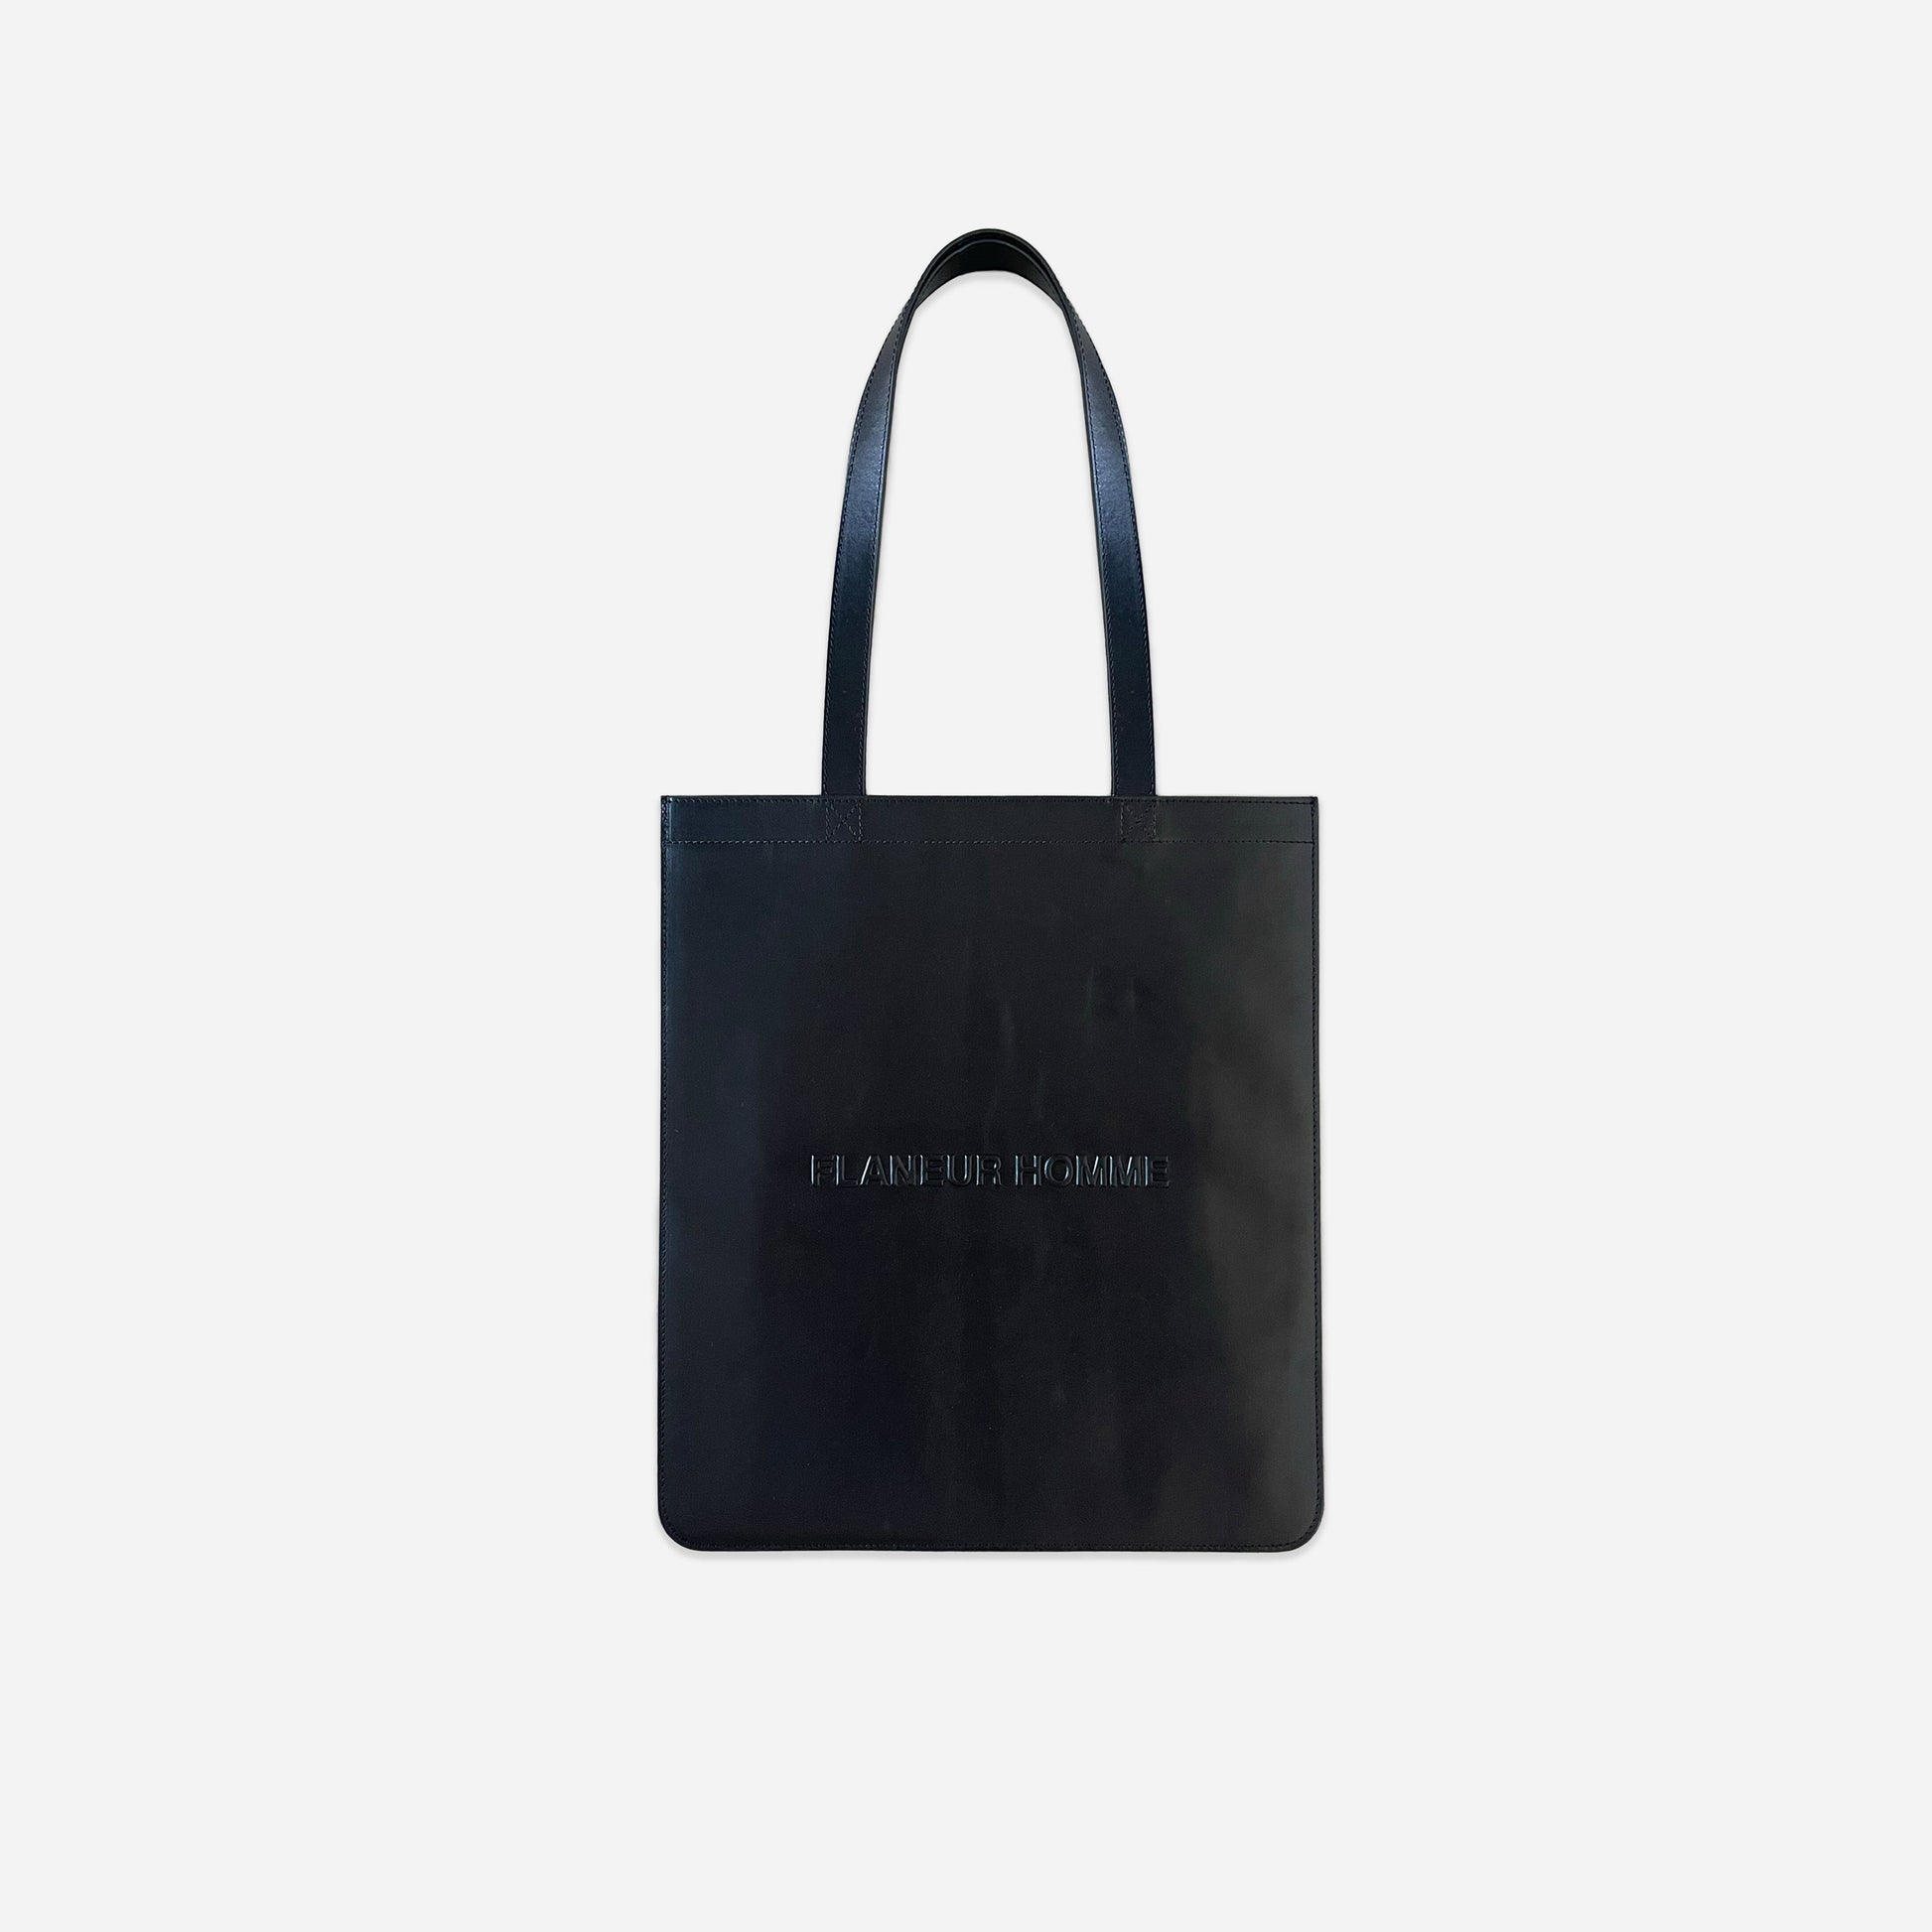 Logo Press Tote Bag in Black Leather